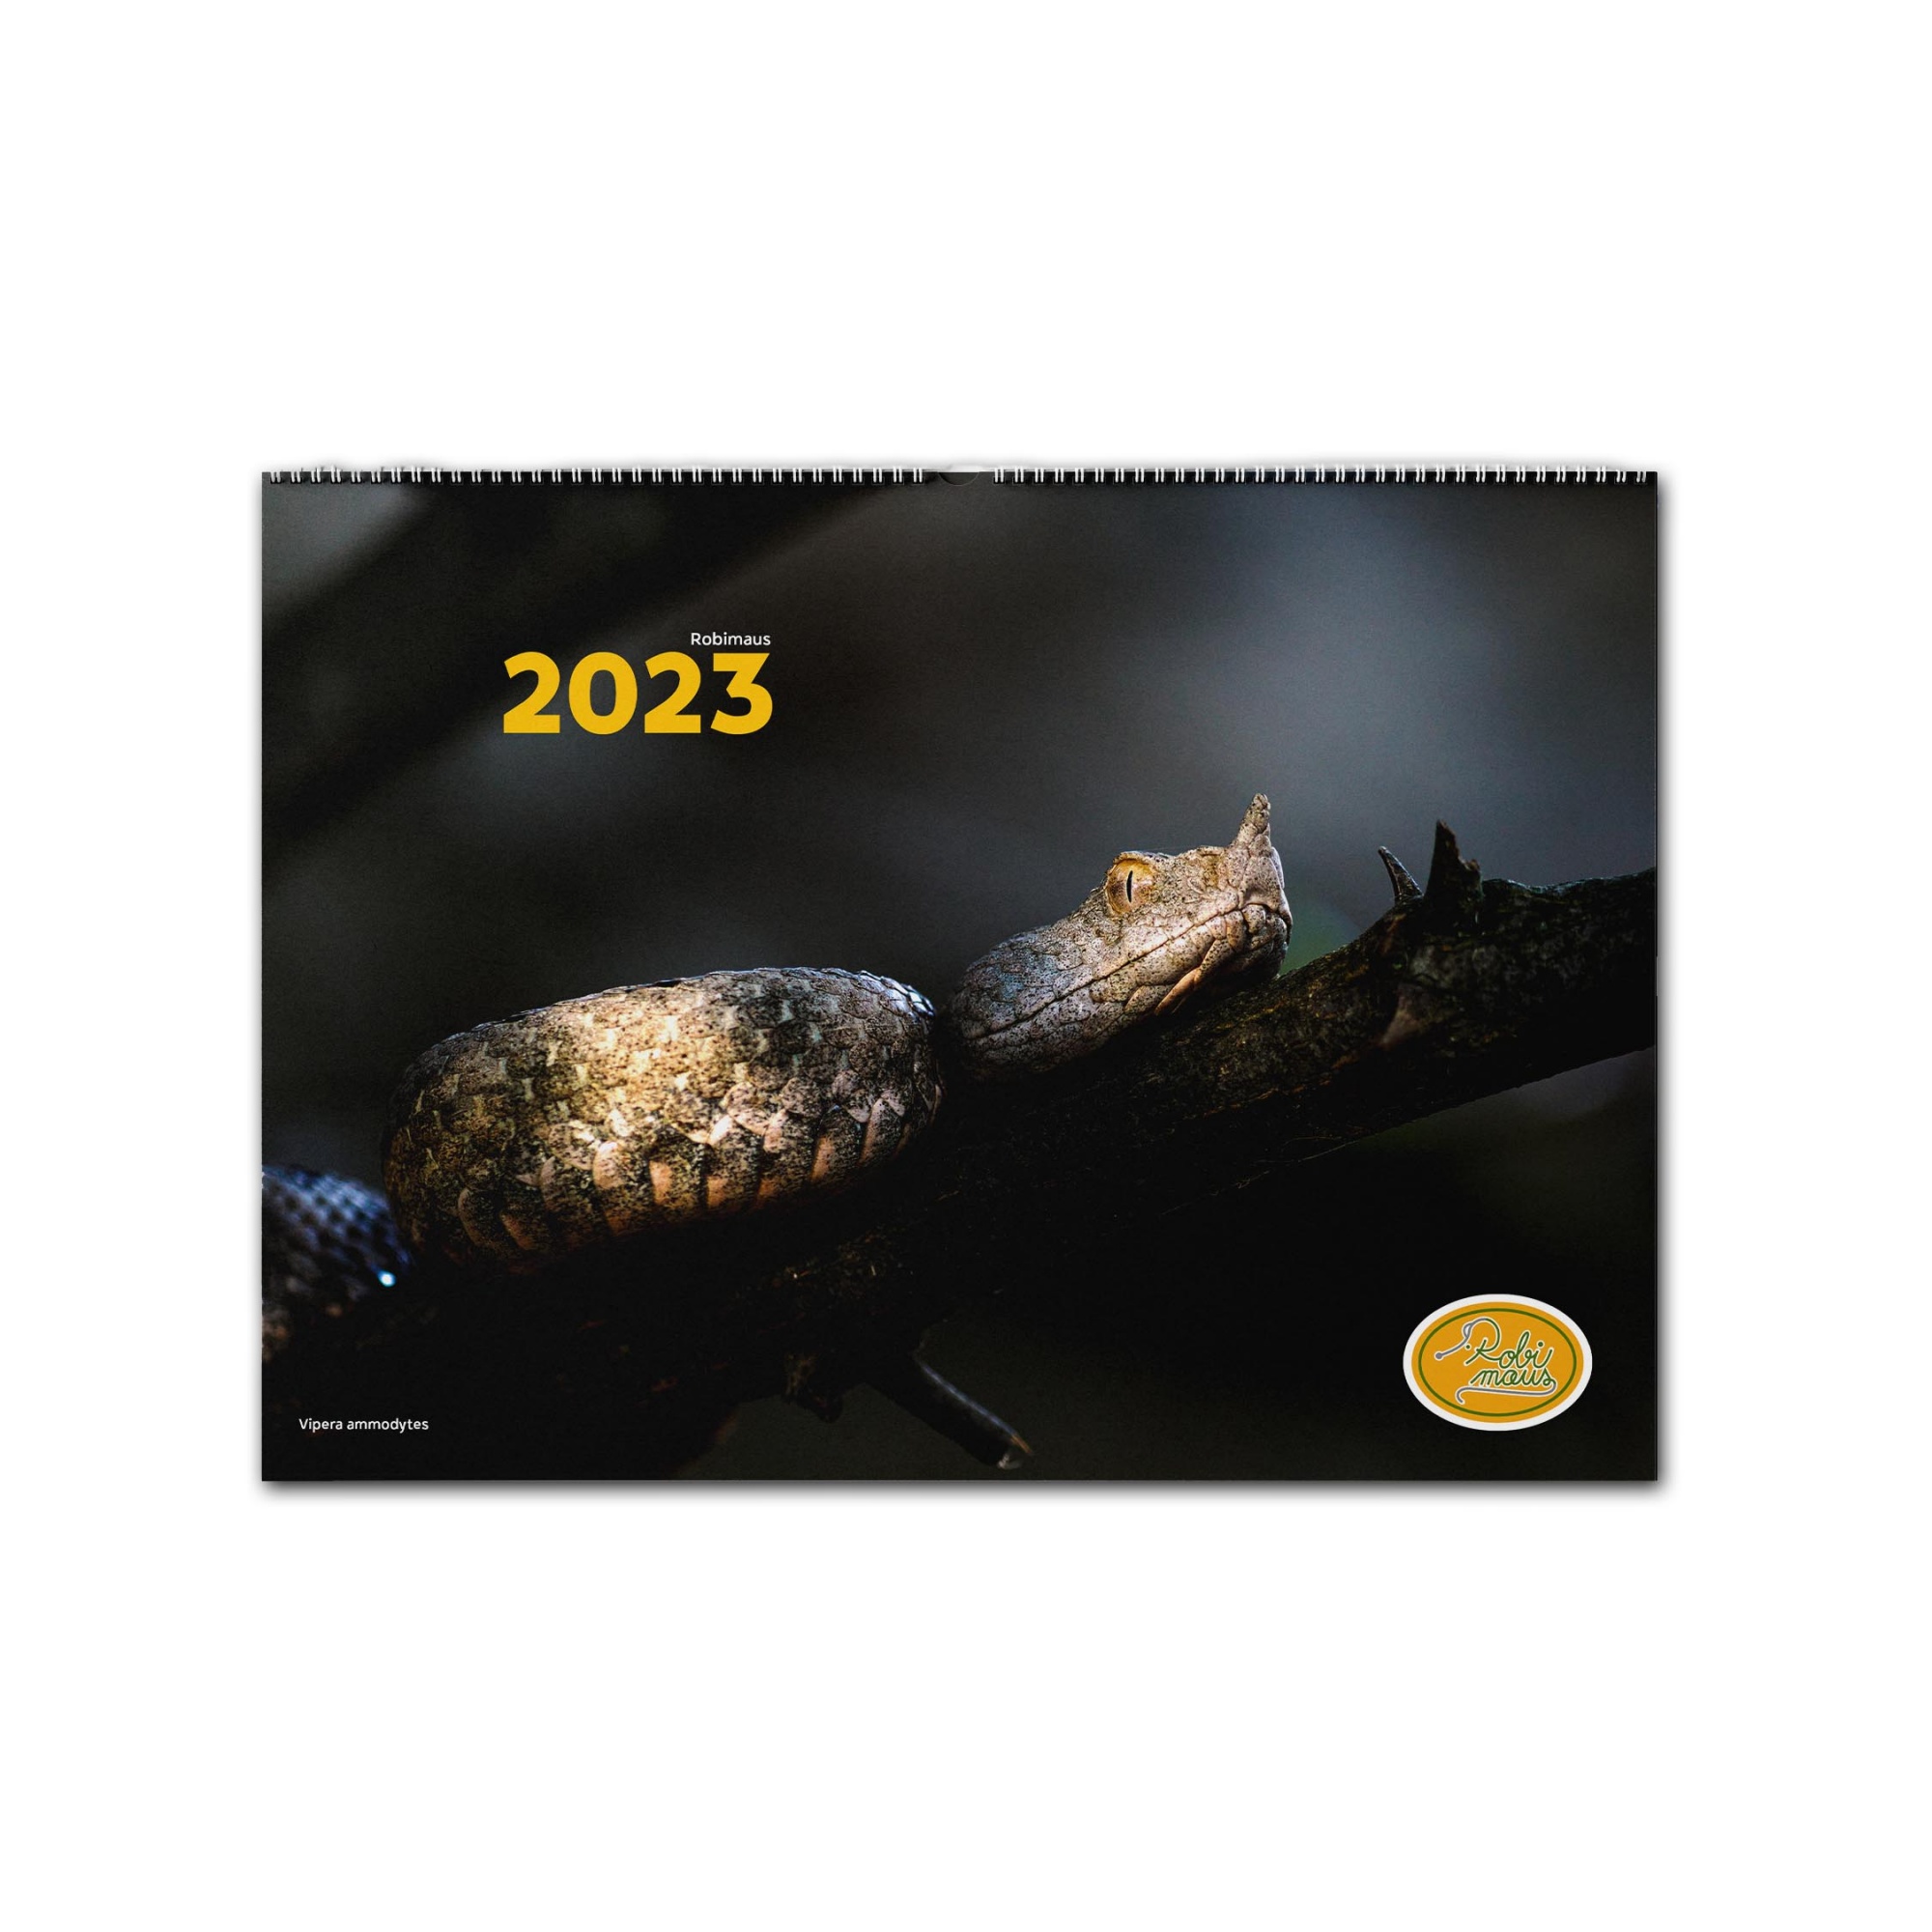 Nástěnný kalendář Robimaus 2023